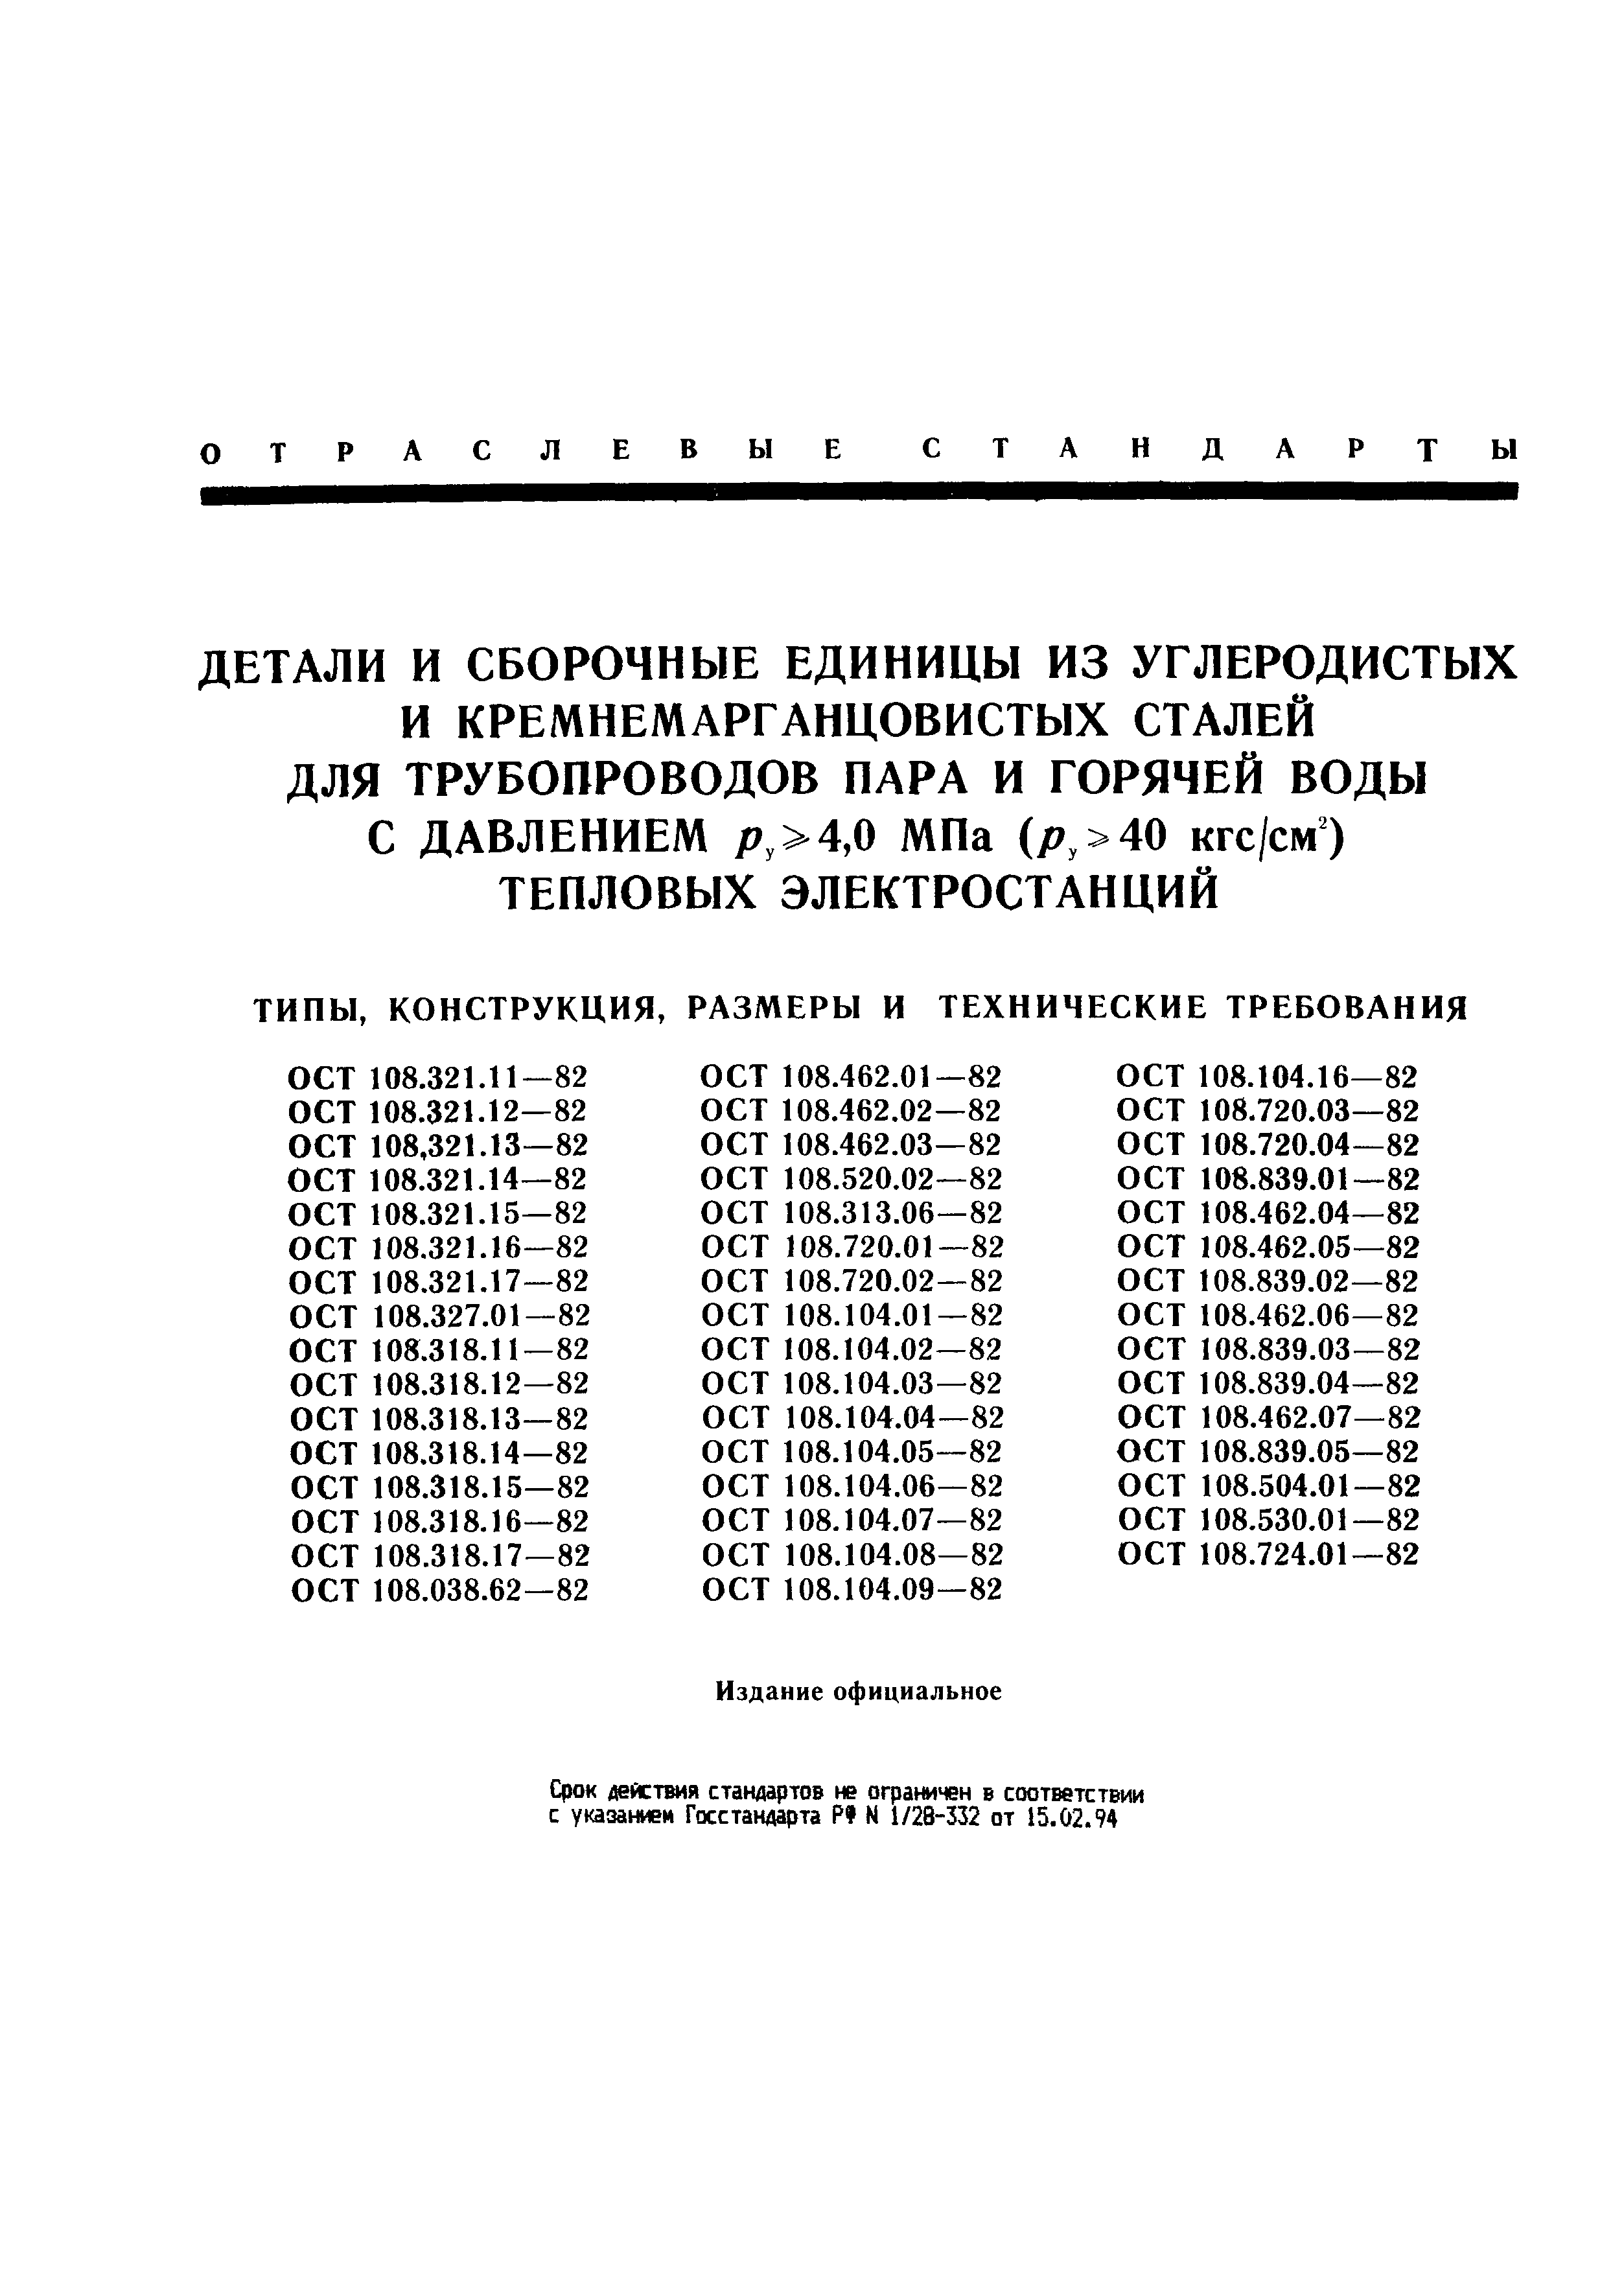 ОСТ 108.462.02-82